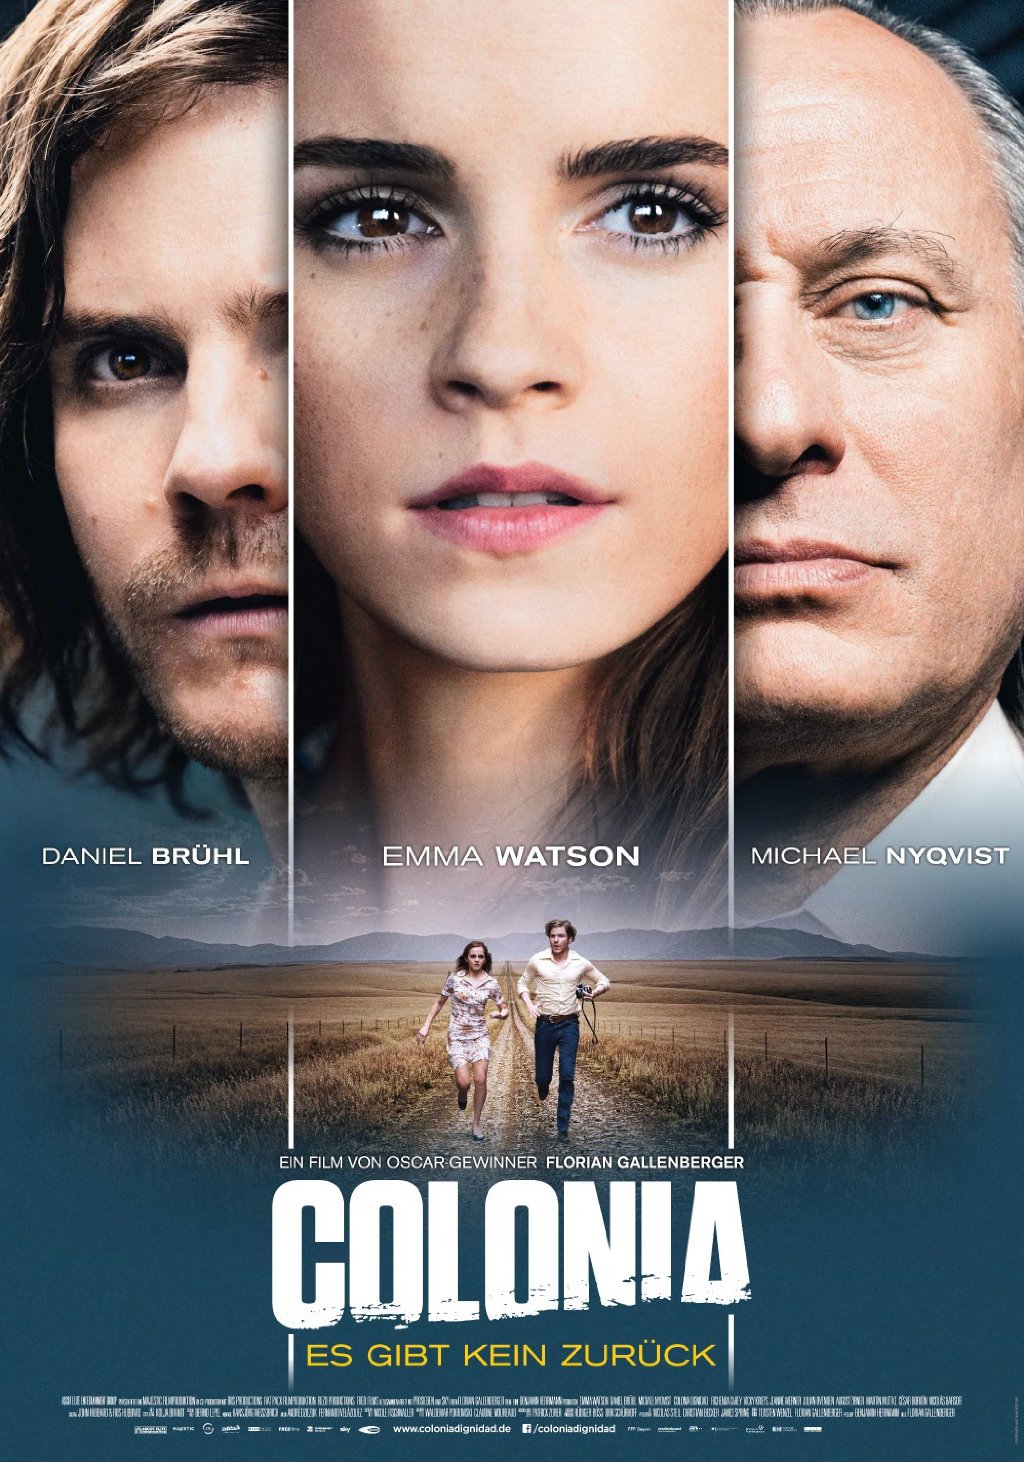 Colonia 2015